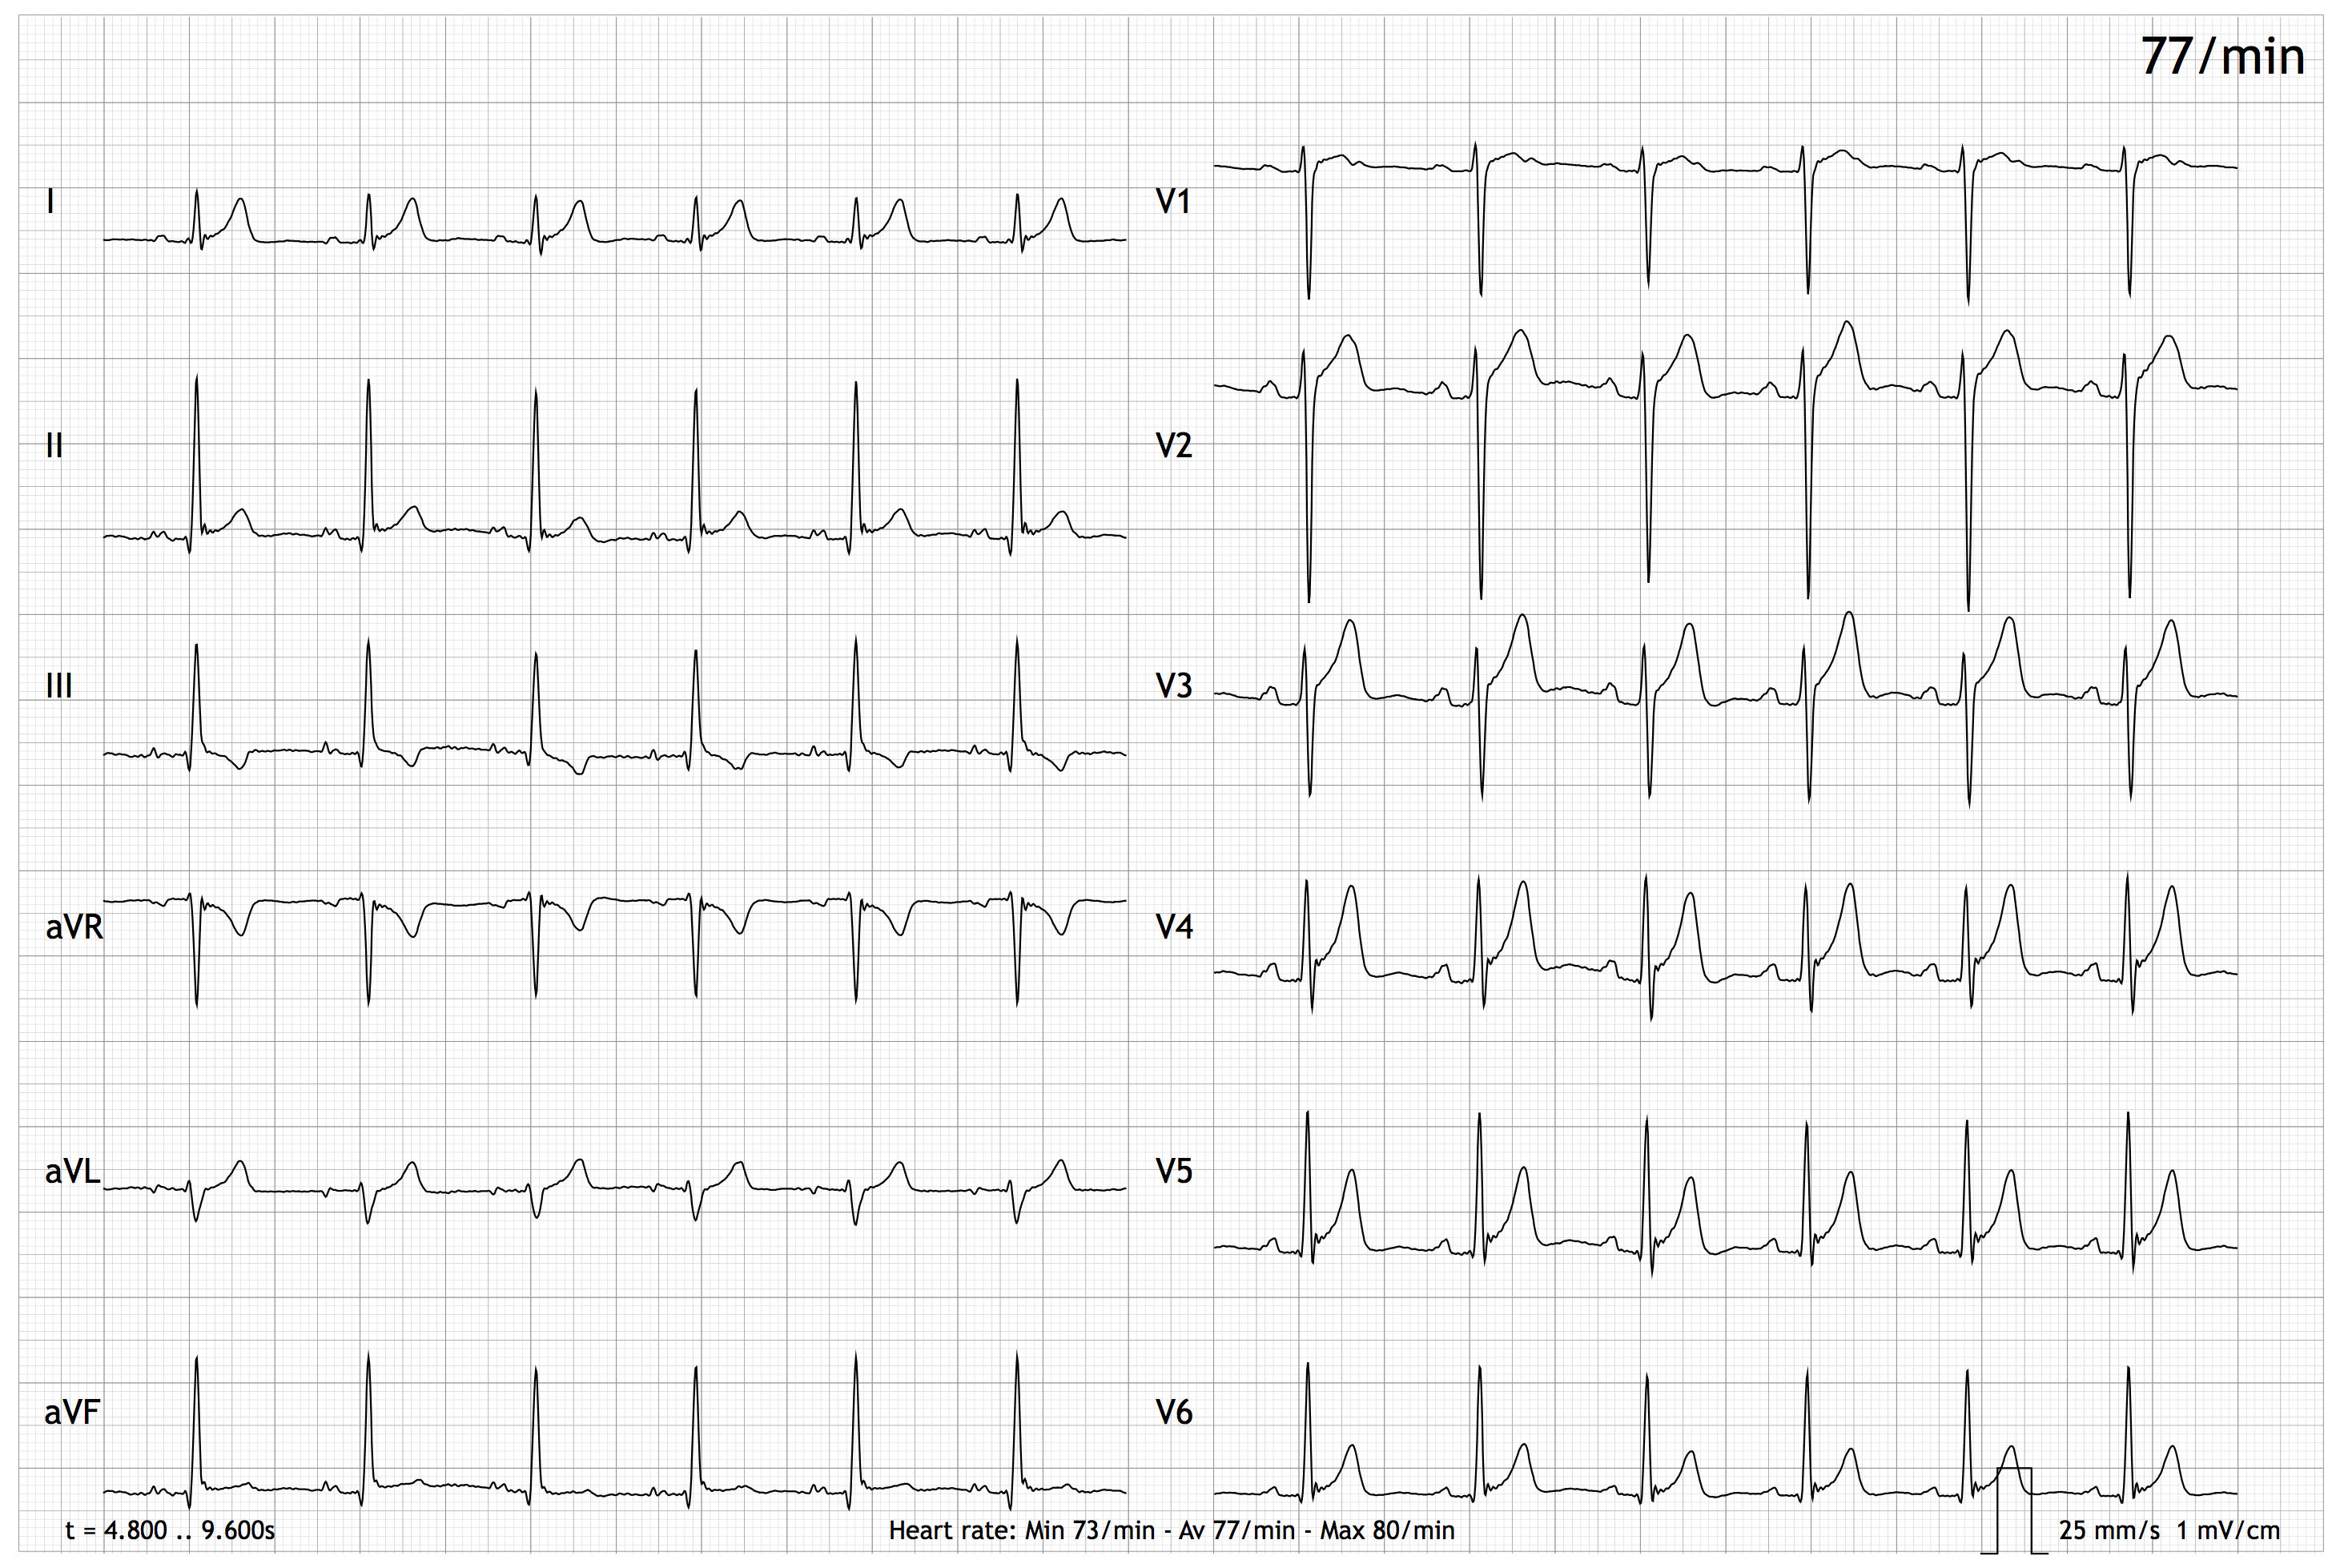 Graph der Ableitungen (I, II, III, aVR, aVL, aVF, V1-V6) eines EASI-EKGs